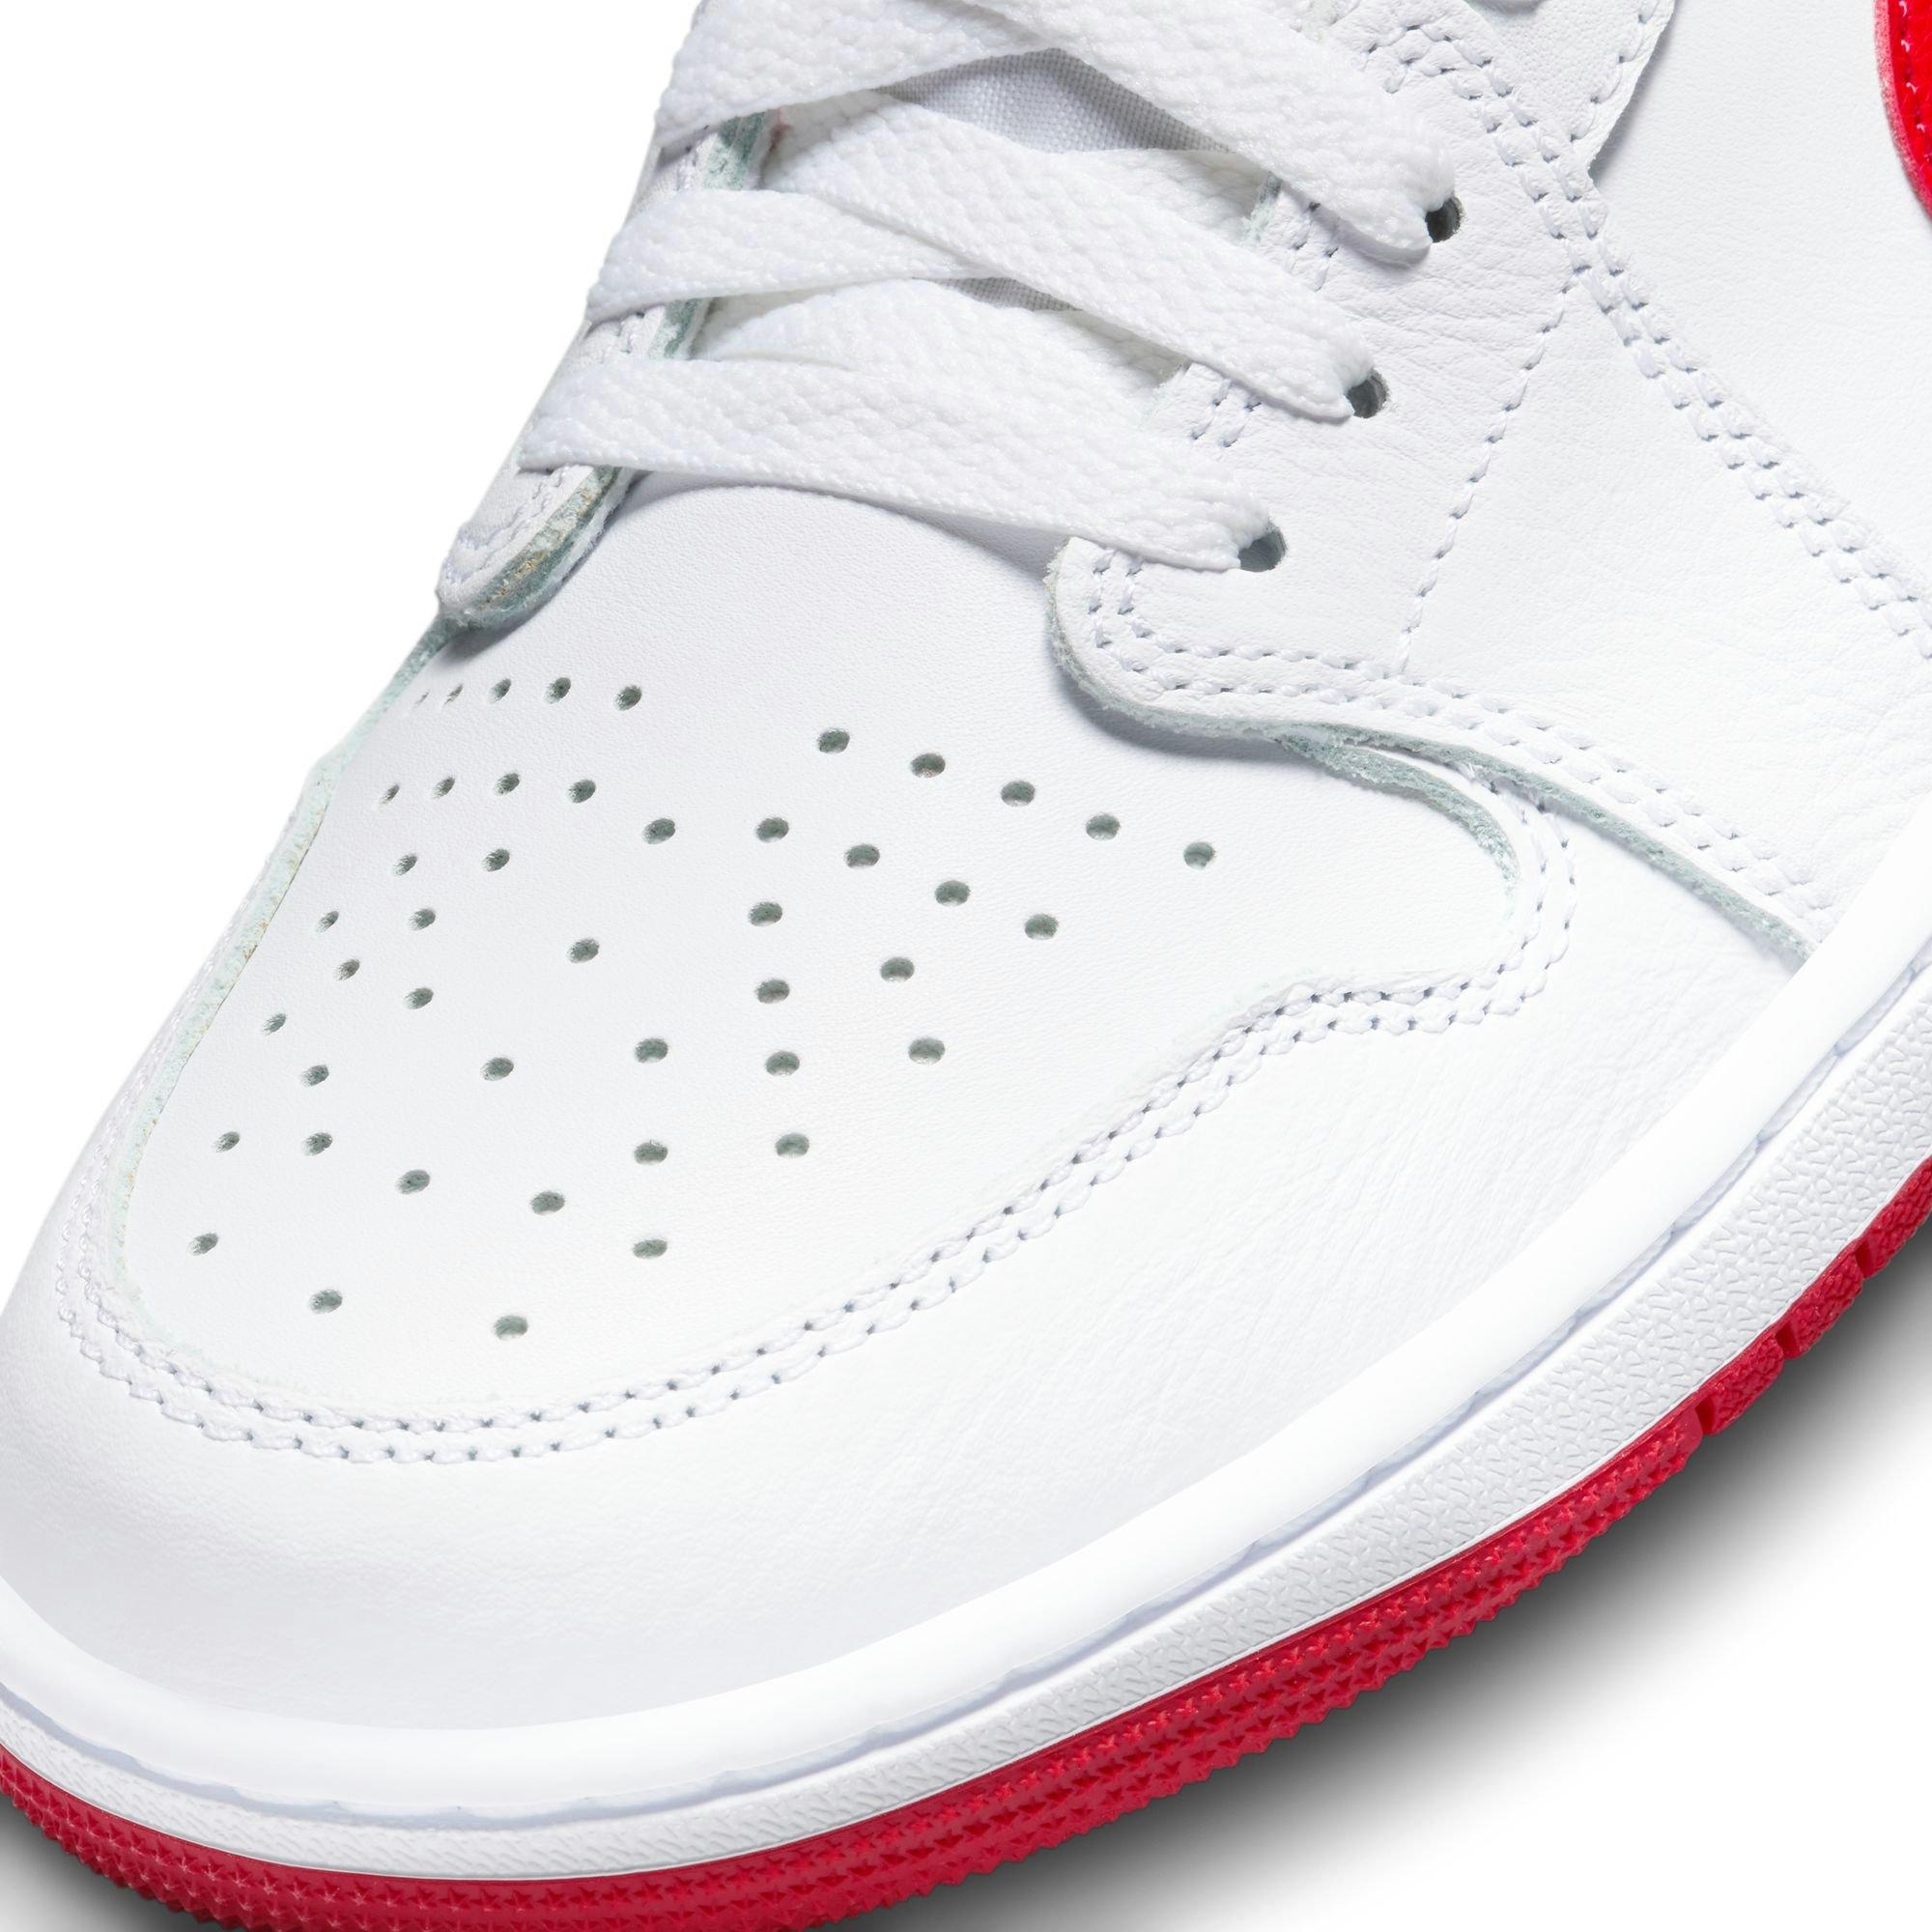 Jordan 1 Low OG Black Toe Men's Shoe - Hibbett